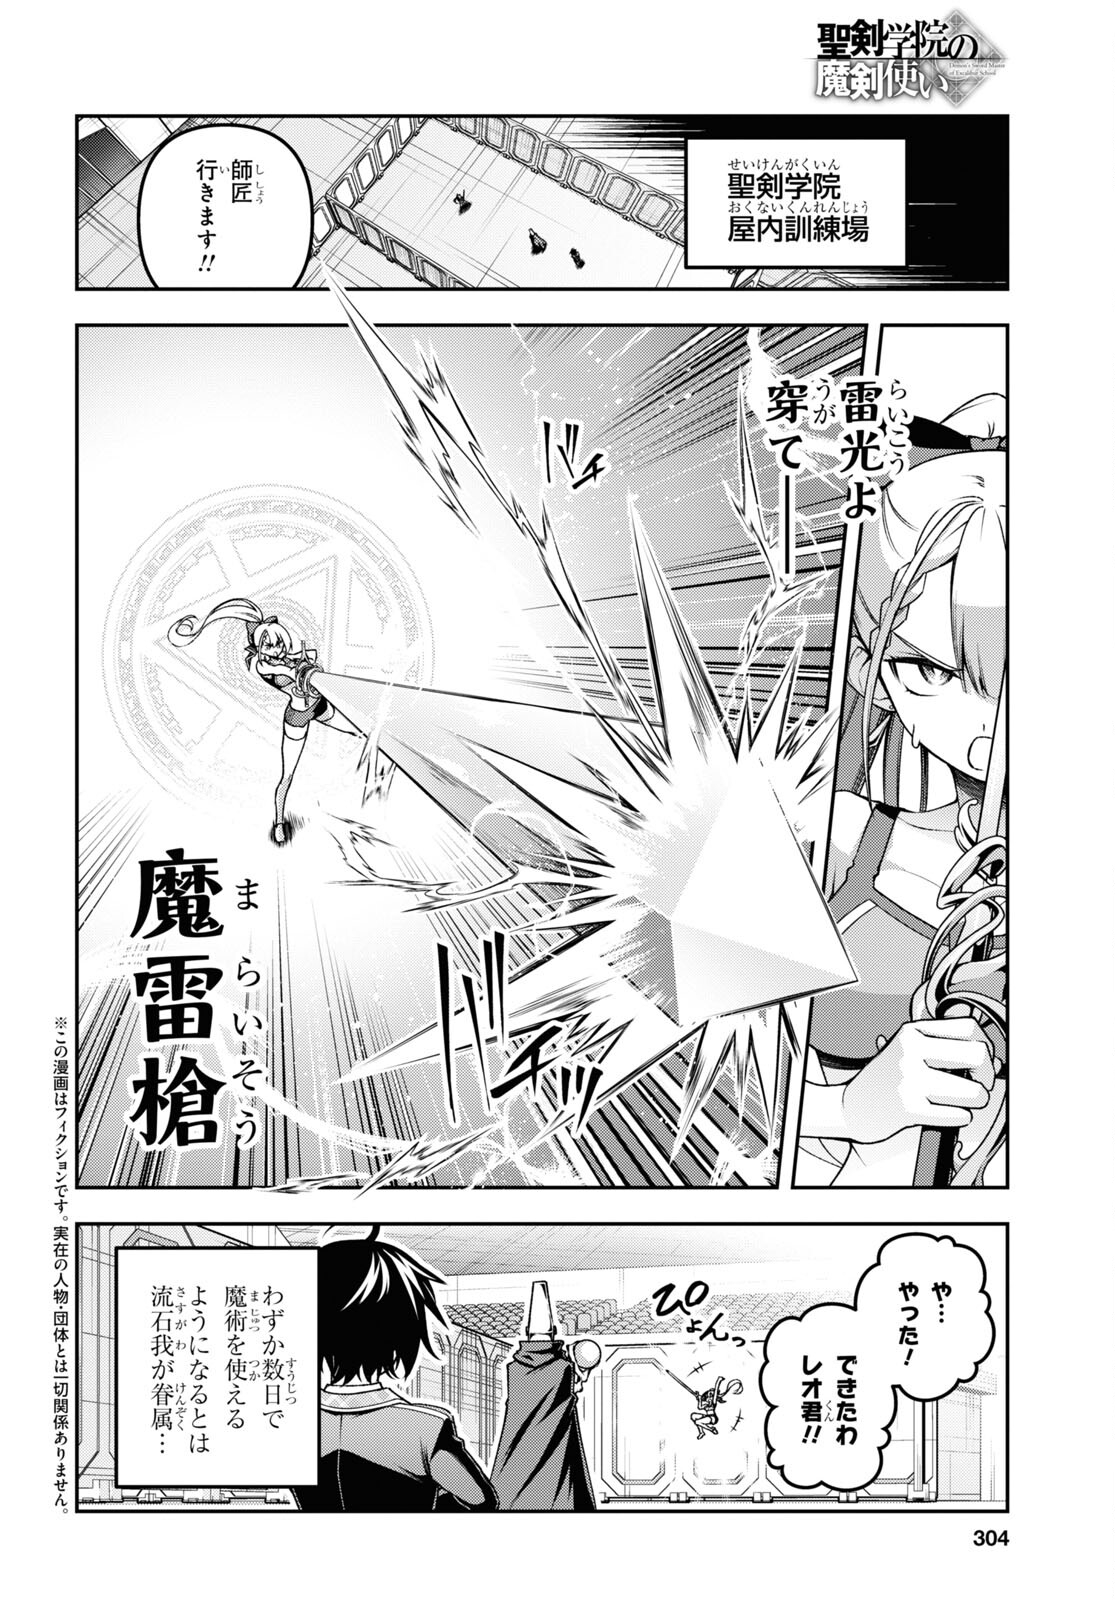 Seiken Gakuin no Maken Tsukai - Chapter 49 - Page 2